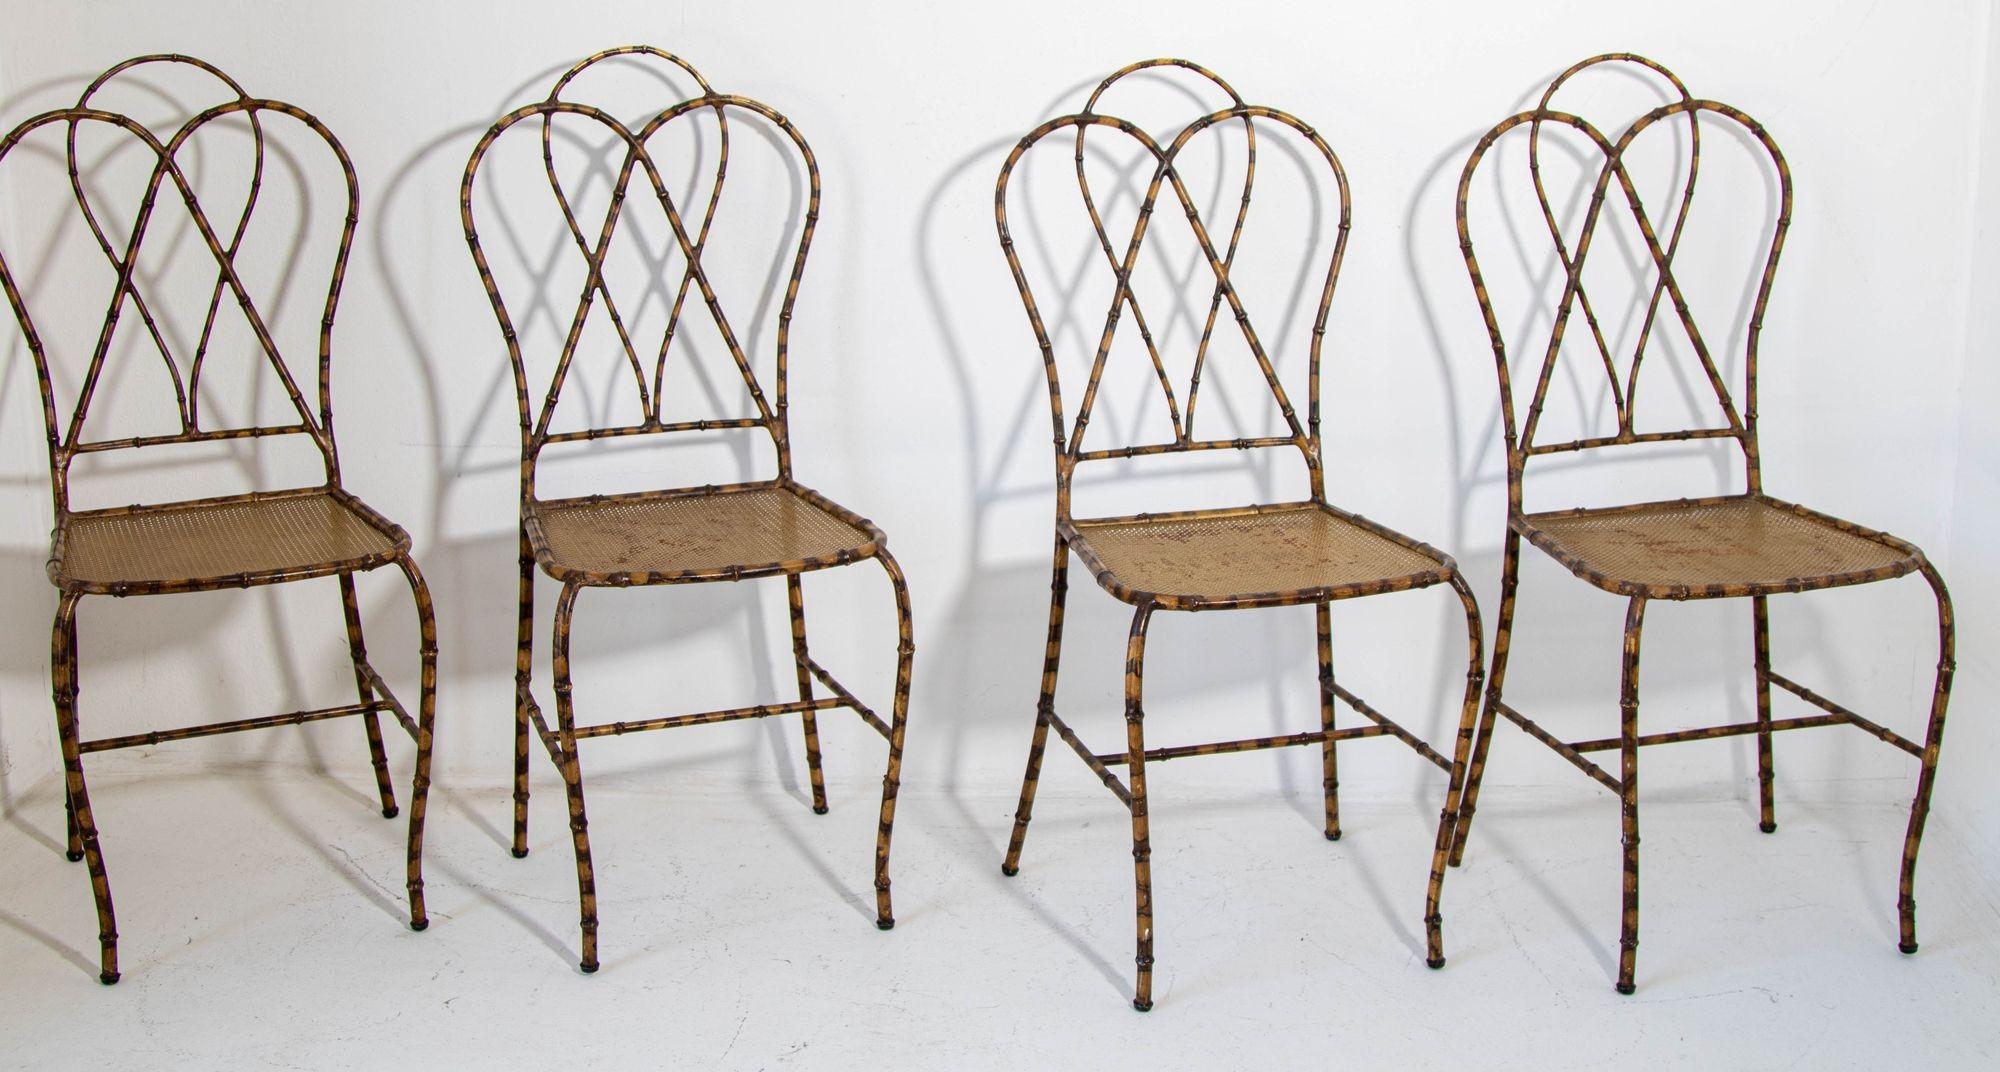 Chaises de salle à manger italiennes en métal doré et en faux bambou, années 1950, ensemble de 4.
L'offre concerne le jeu de 4 chaises, nous avons également la base de table assortie si vous êtes intéressé.
Ensemble de quatre chaises arquées en faux